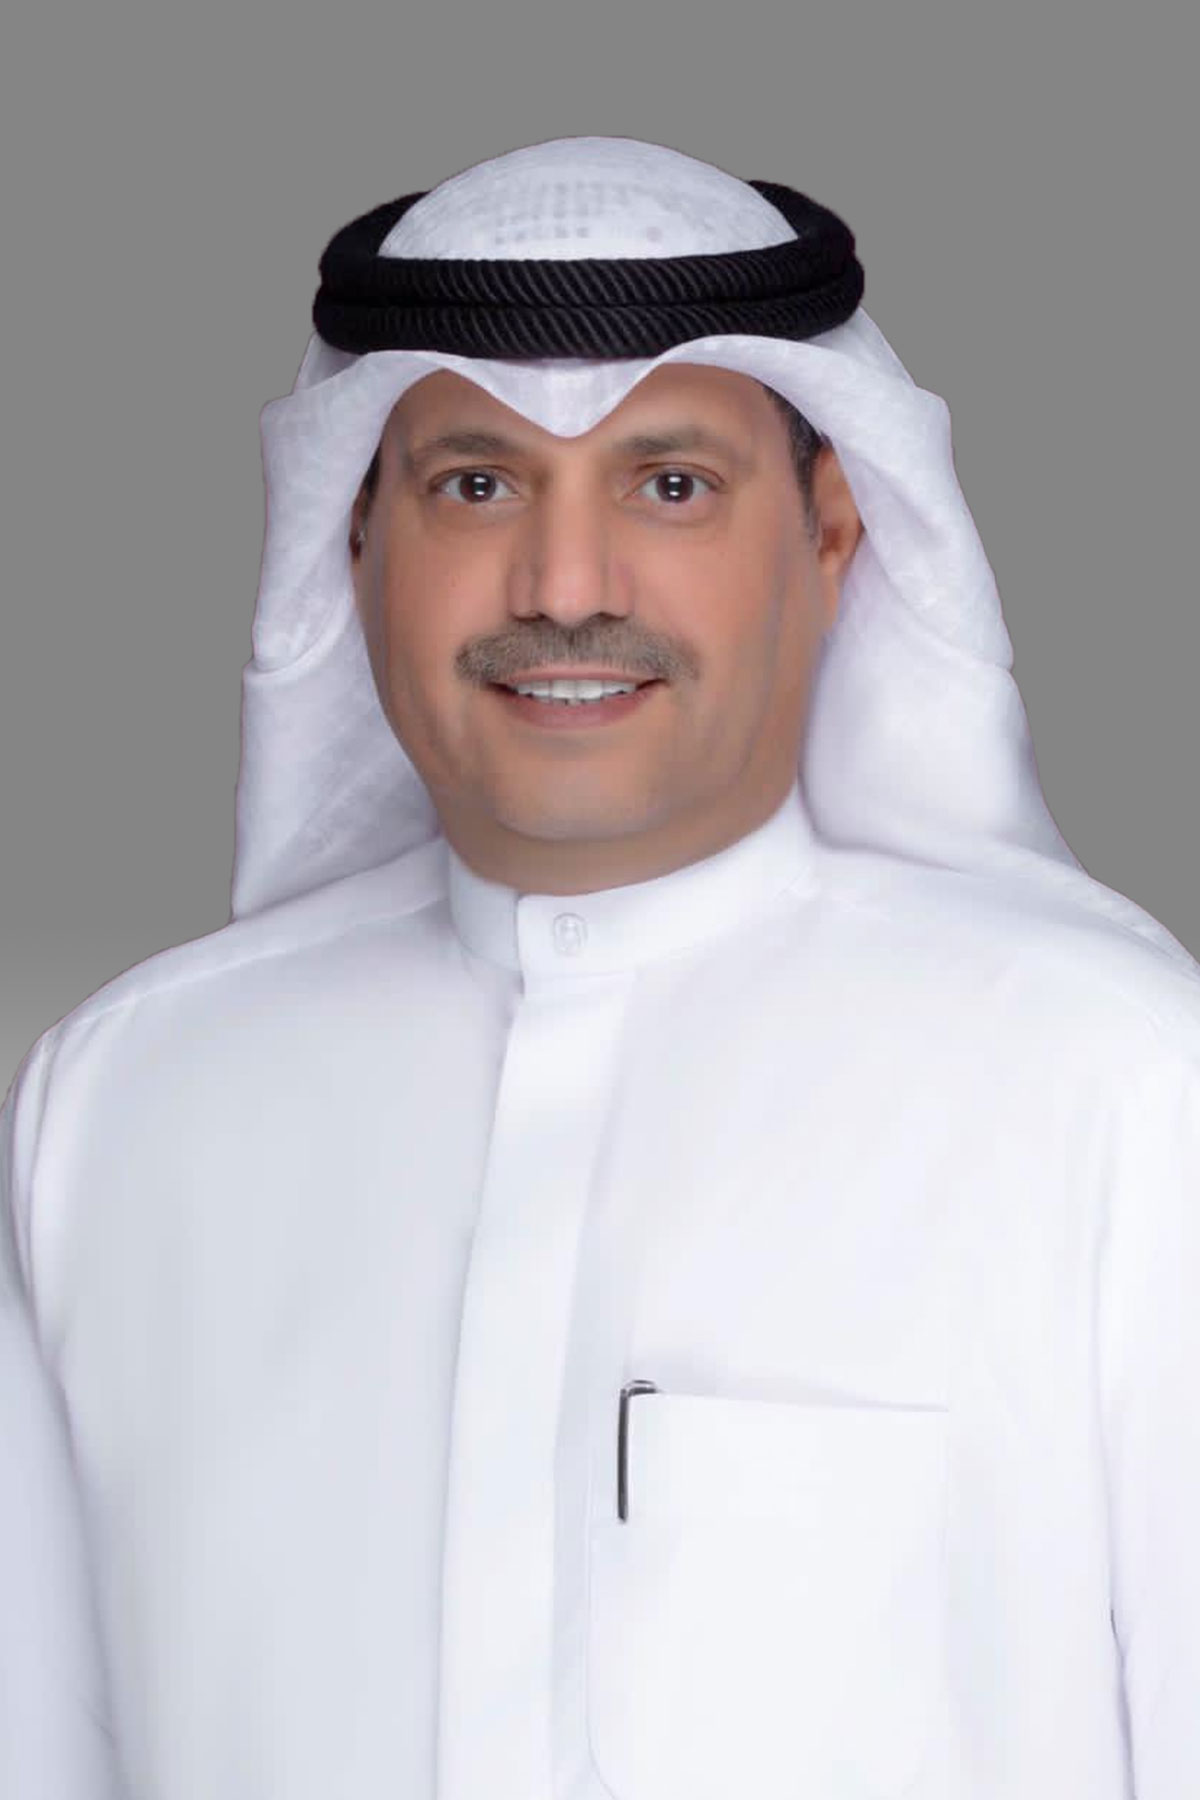 الديحاني يقترح تعديل قانون العمل في قطاع الأعمال النفطية لمنح الأولوية للعمالة الكويتية في التعيين وسد الشواغر